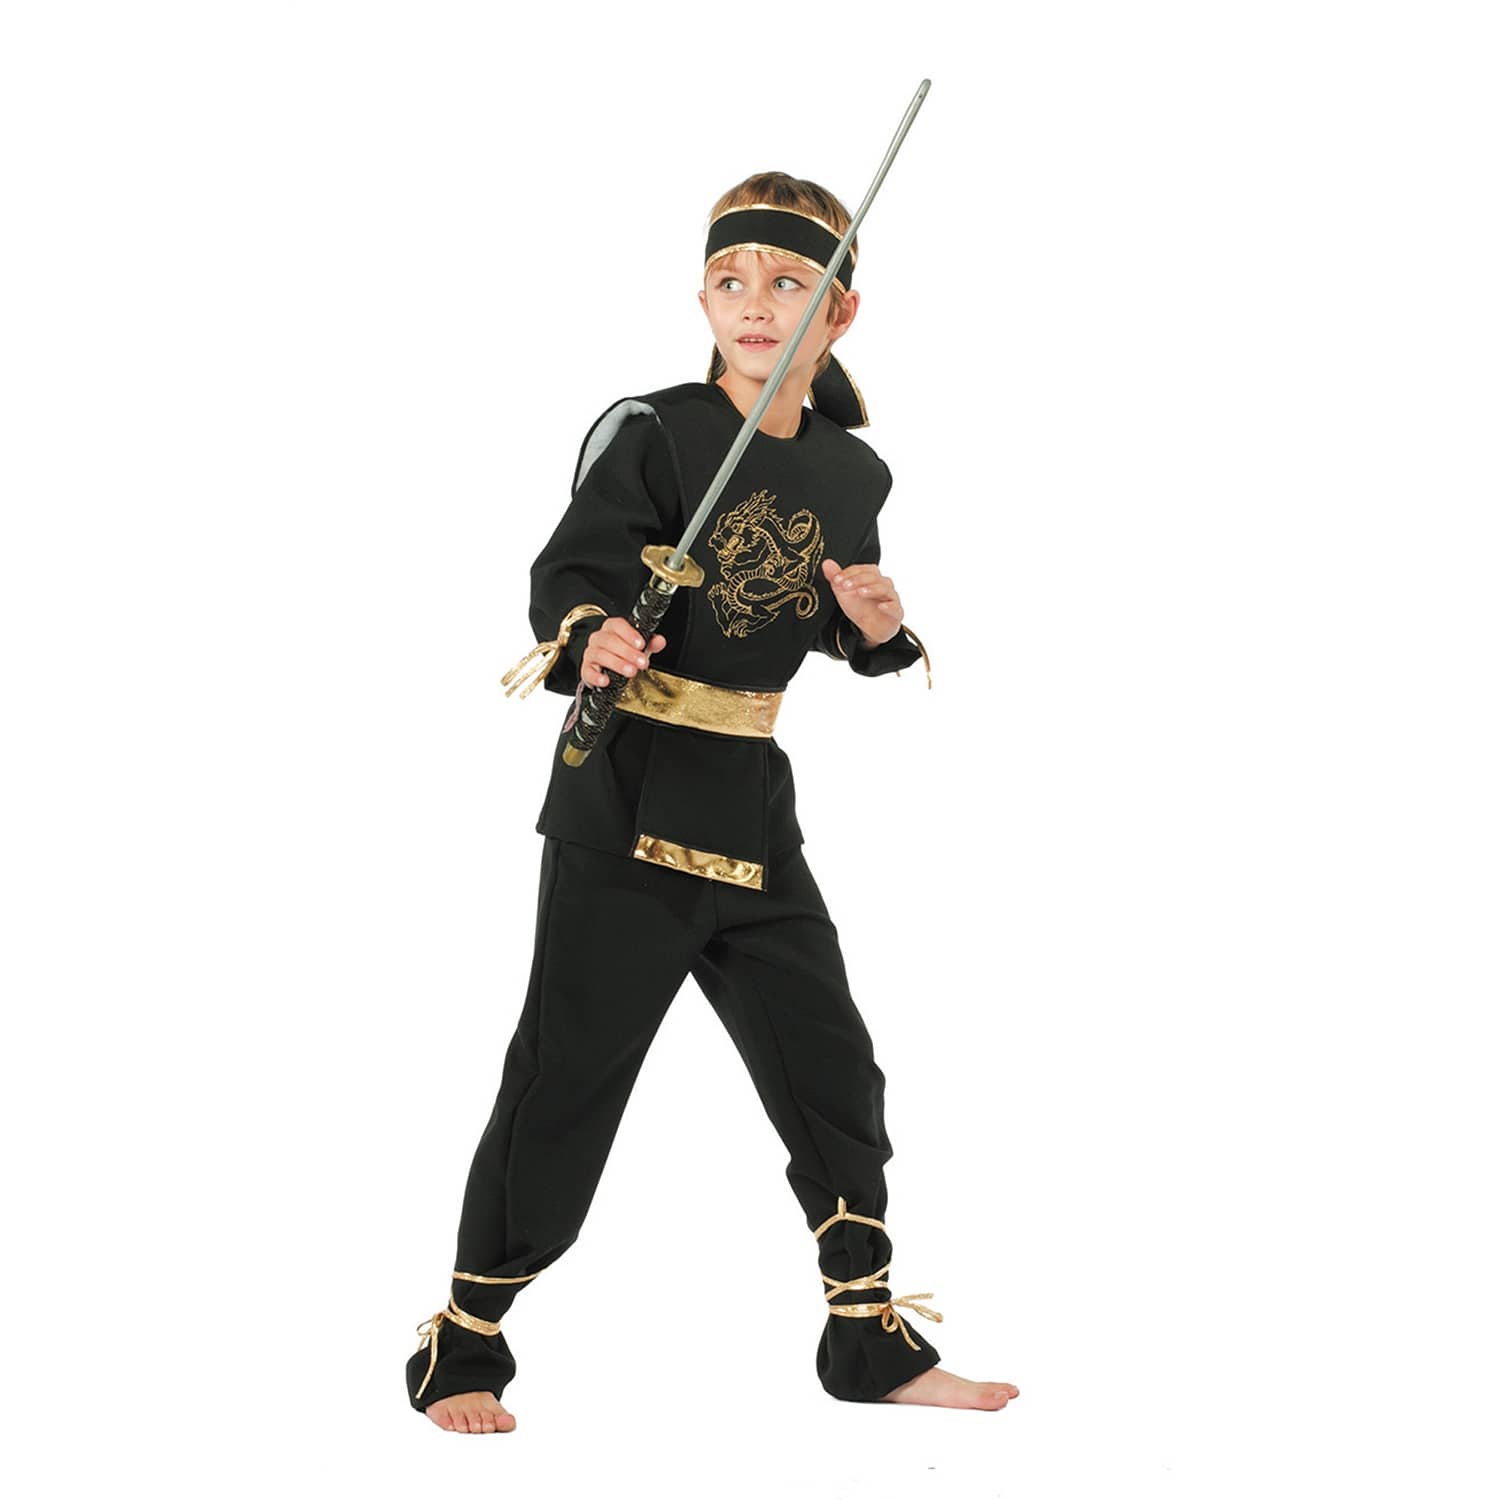 NEU Kinder-Kostüm Ninja Dragon, inkl. Hose, Oberteil, Gürtel & Stirnband, Größe: 116